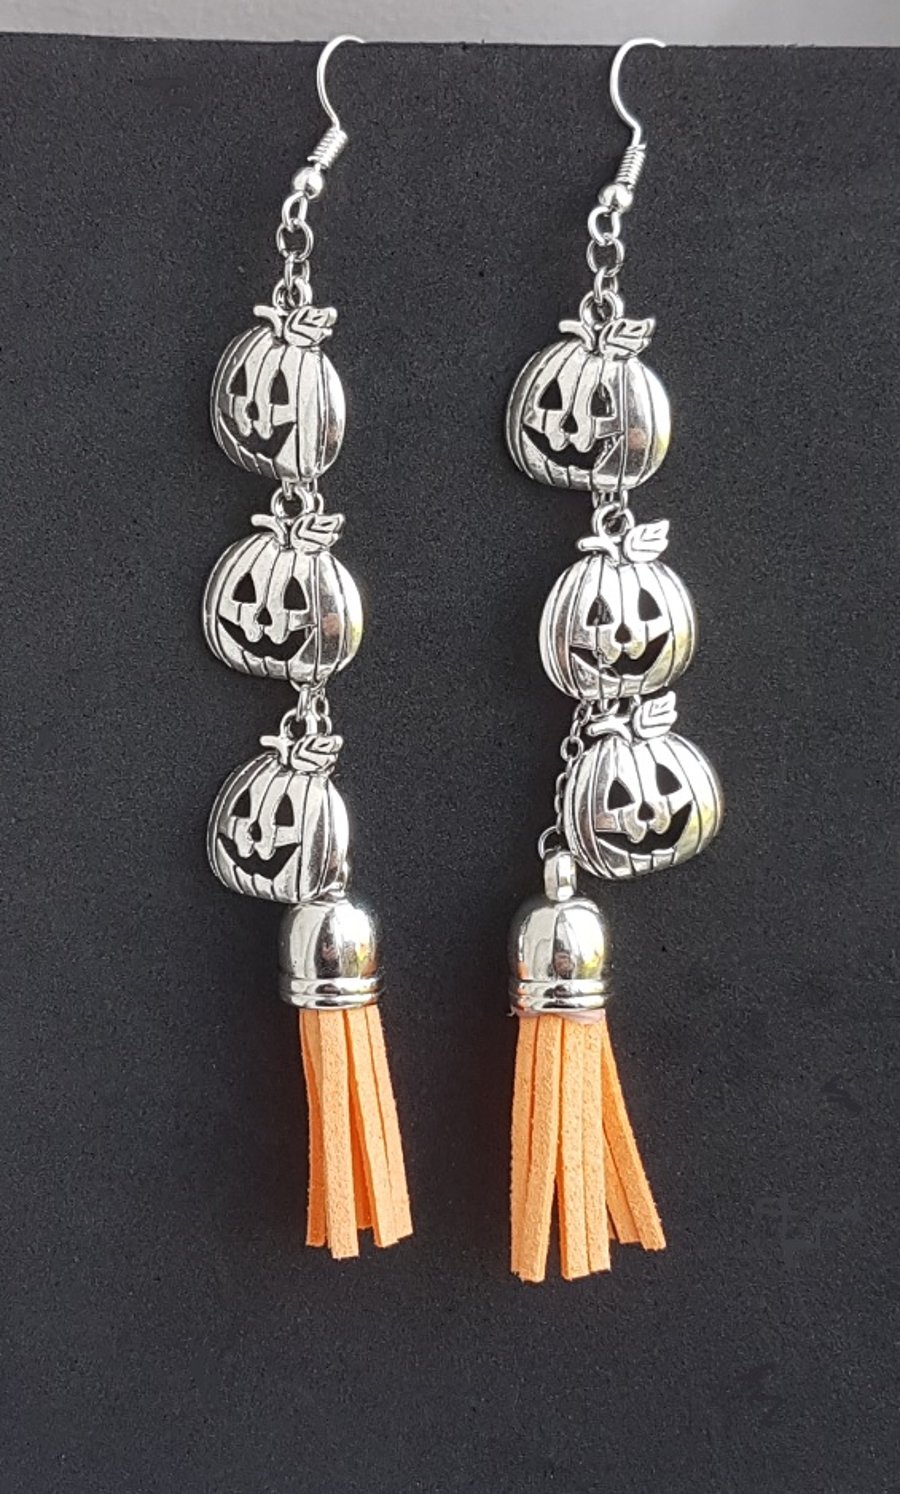 Pumpkin Spice Dangly Triple Pumpkin Charm Earrings - Light Orange Tassel